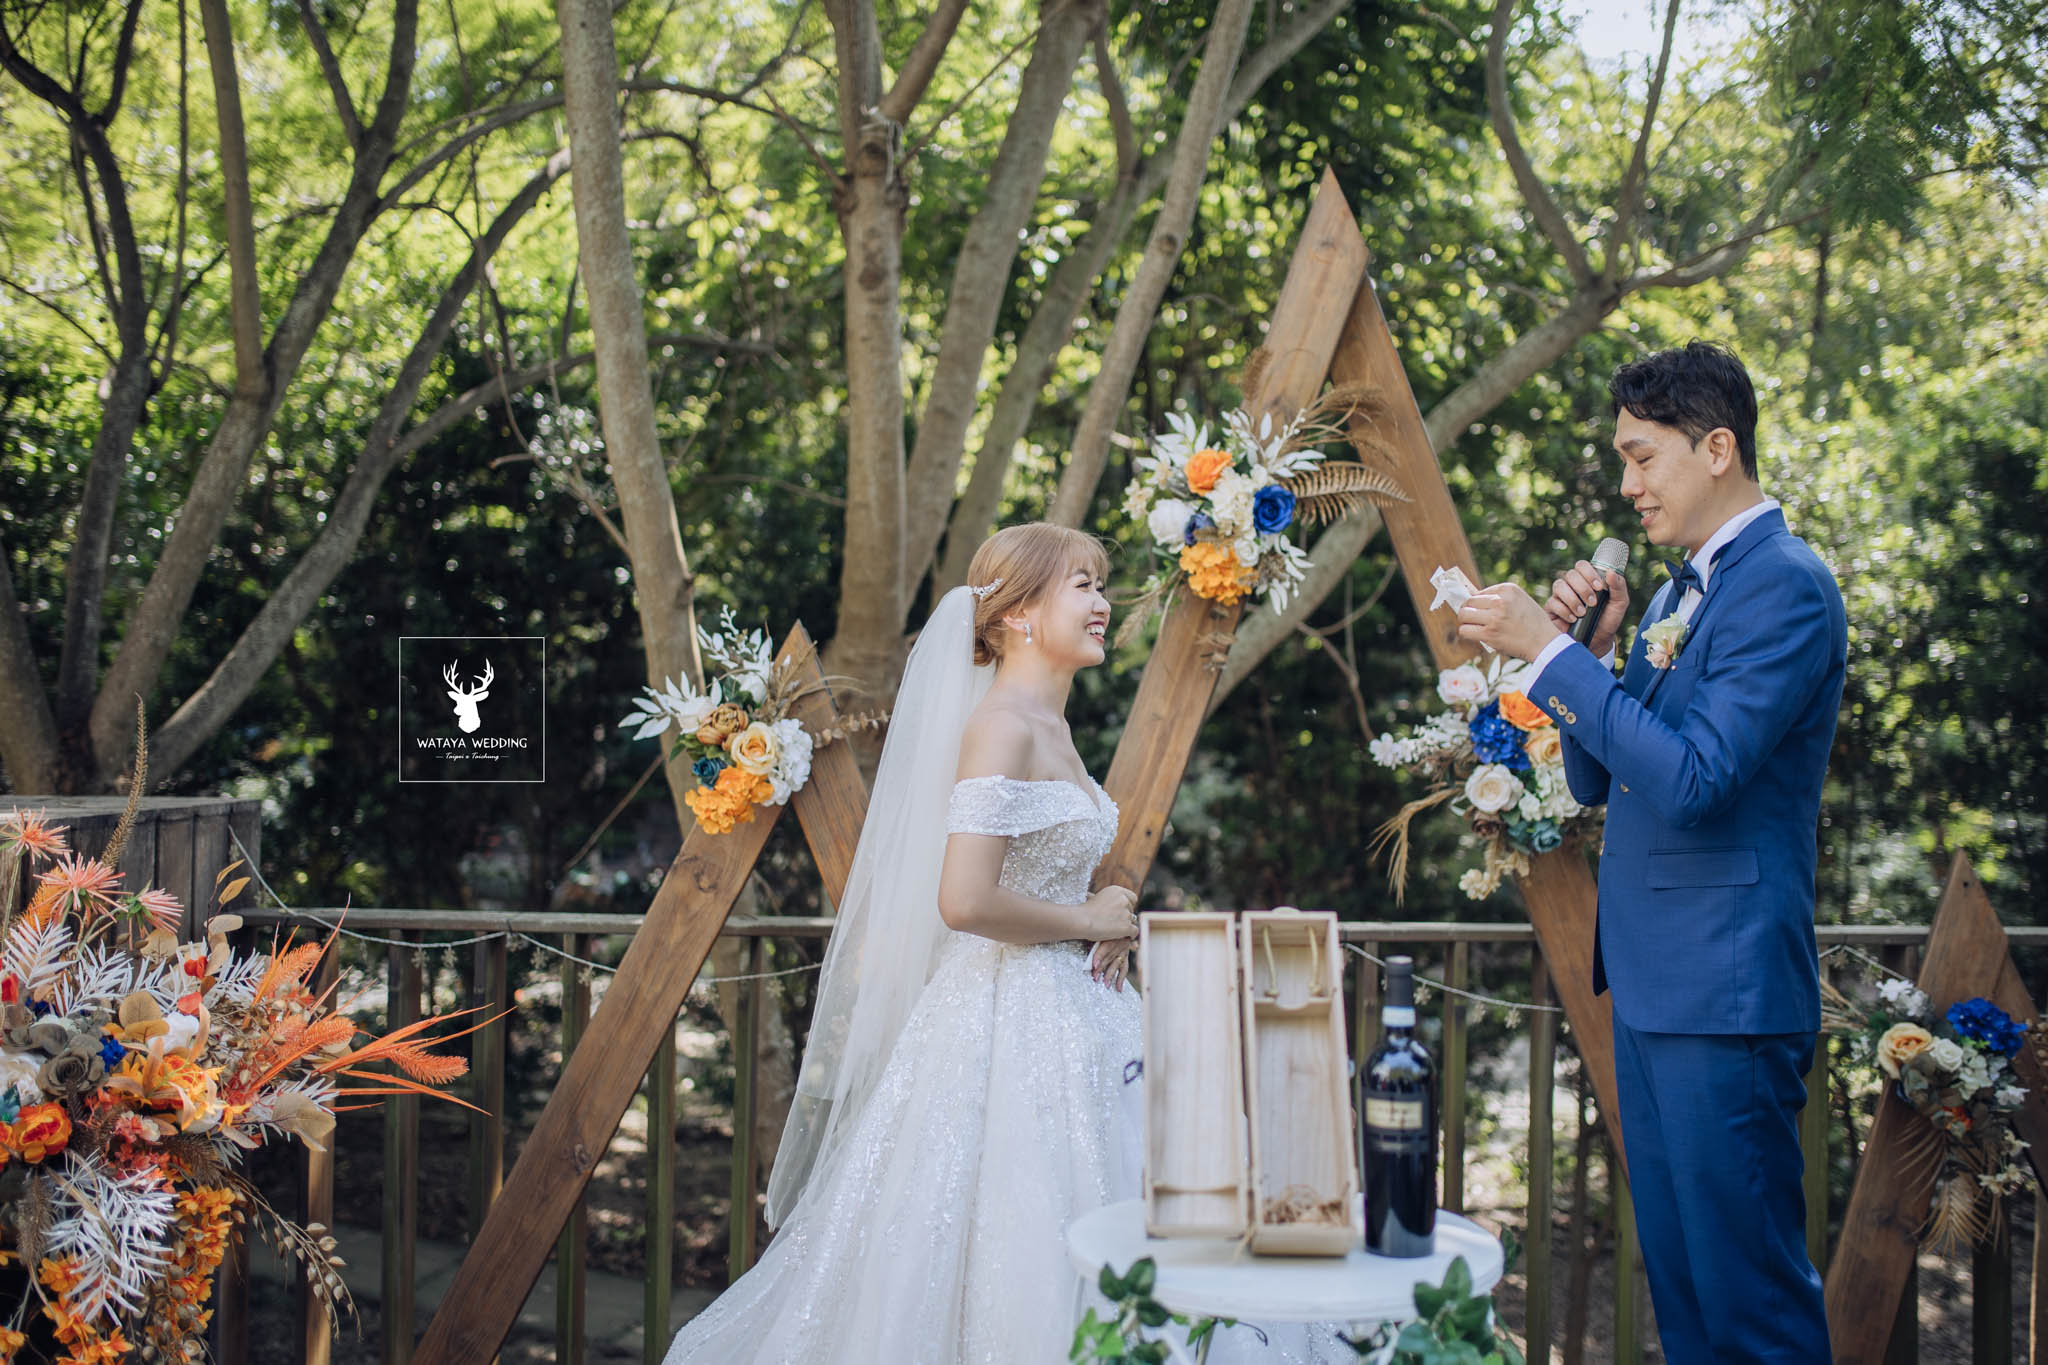 台中綿谷婚禮平面攝影 (36)